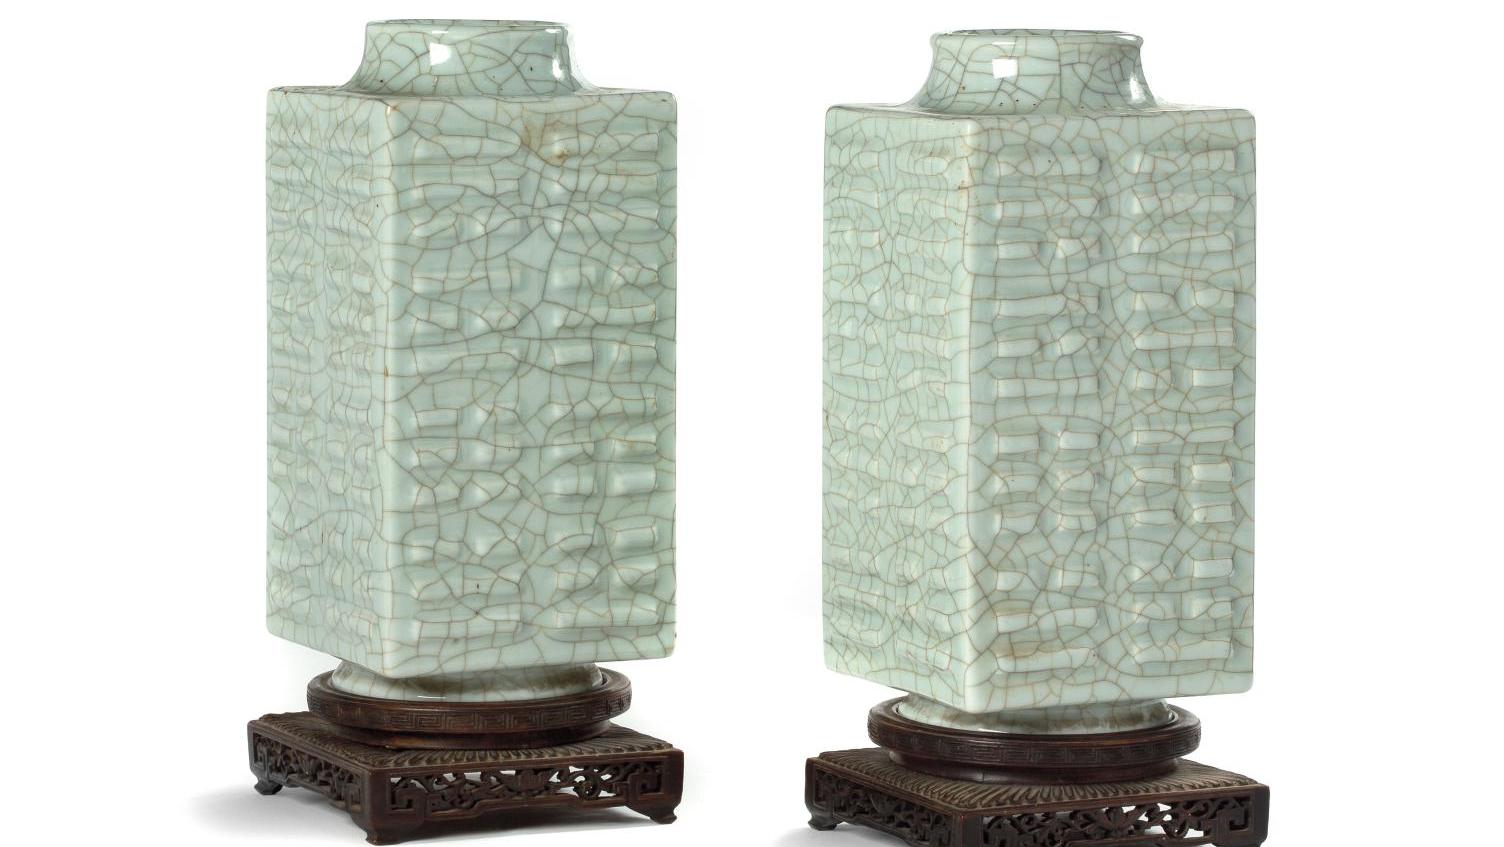 Chine, période Daoguang (1820-1850), paire de vases cong en porcelaine et émail céladon... Vases au carré période Daoguang